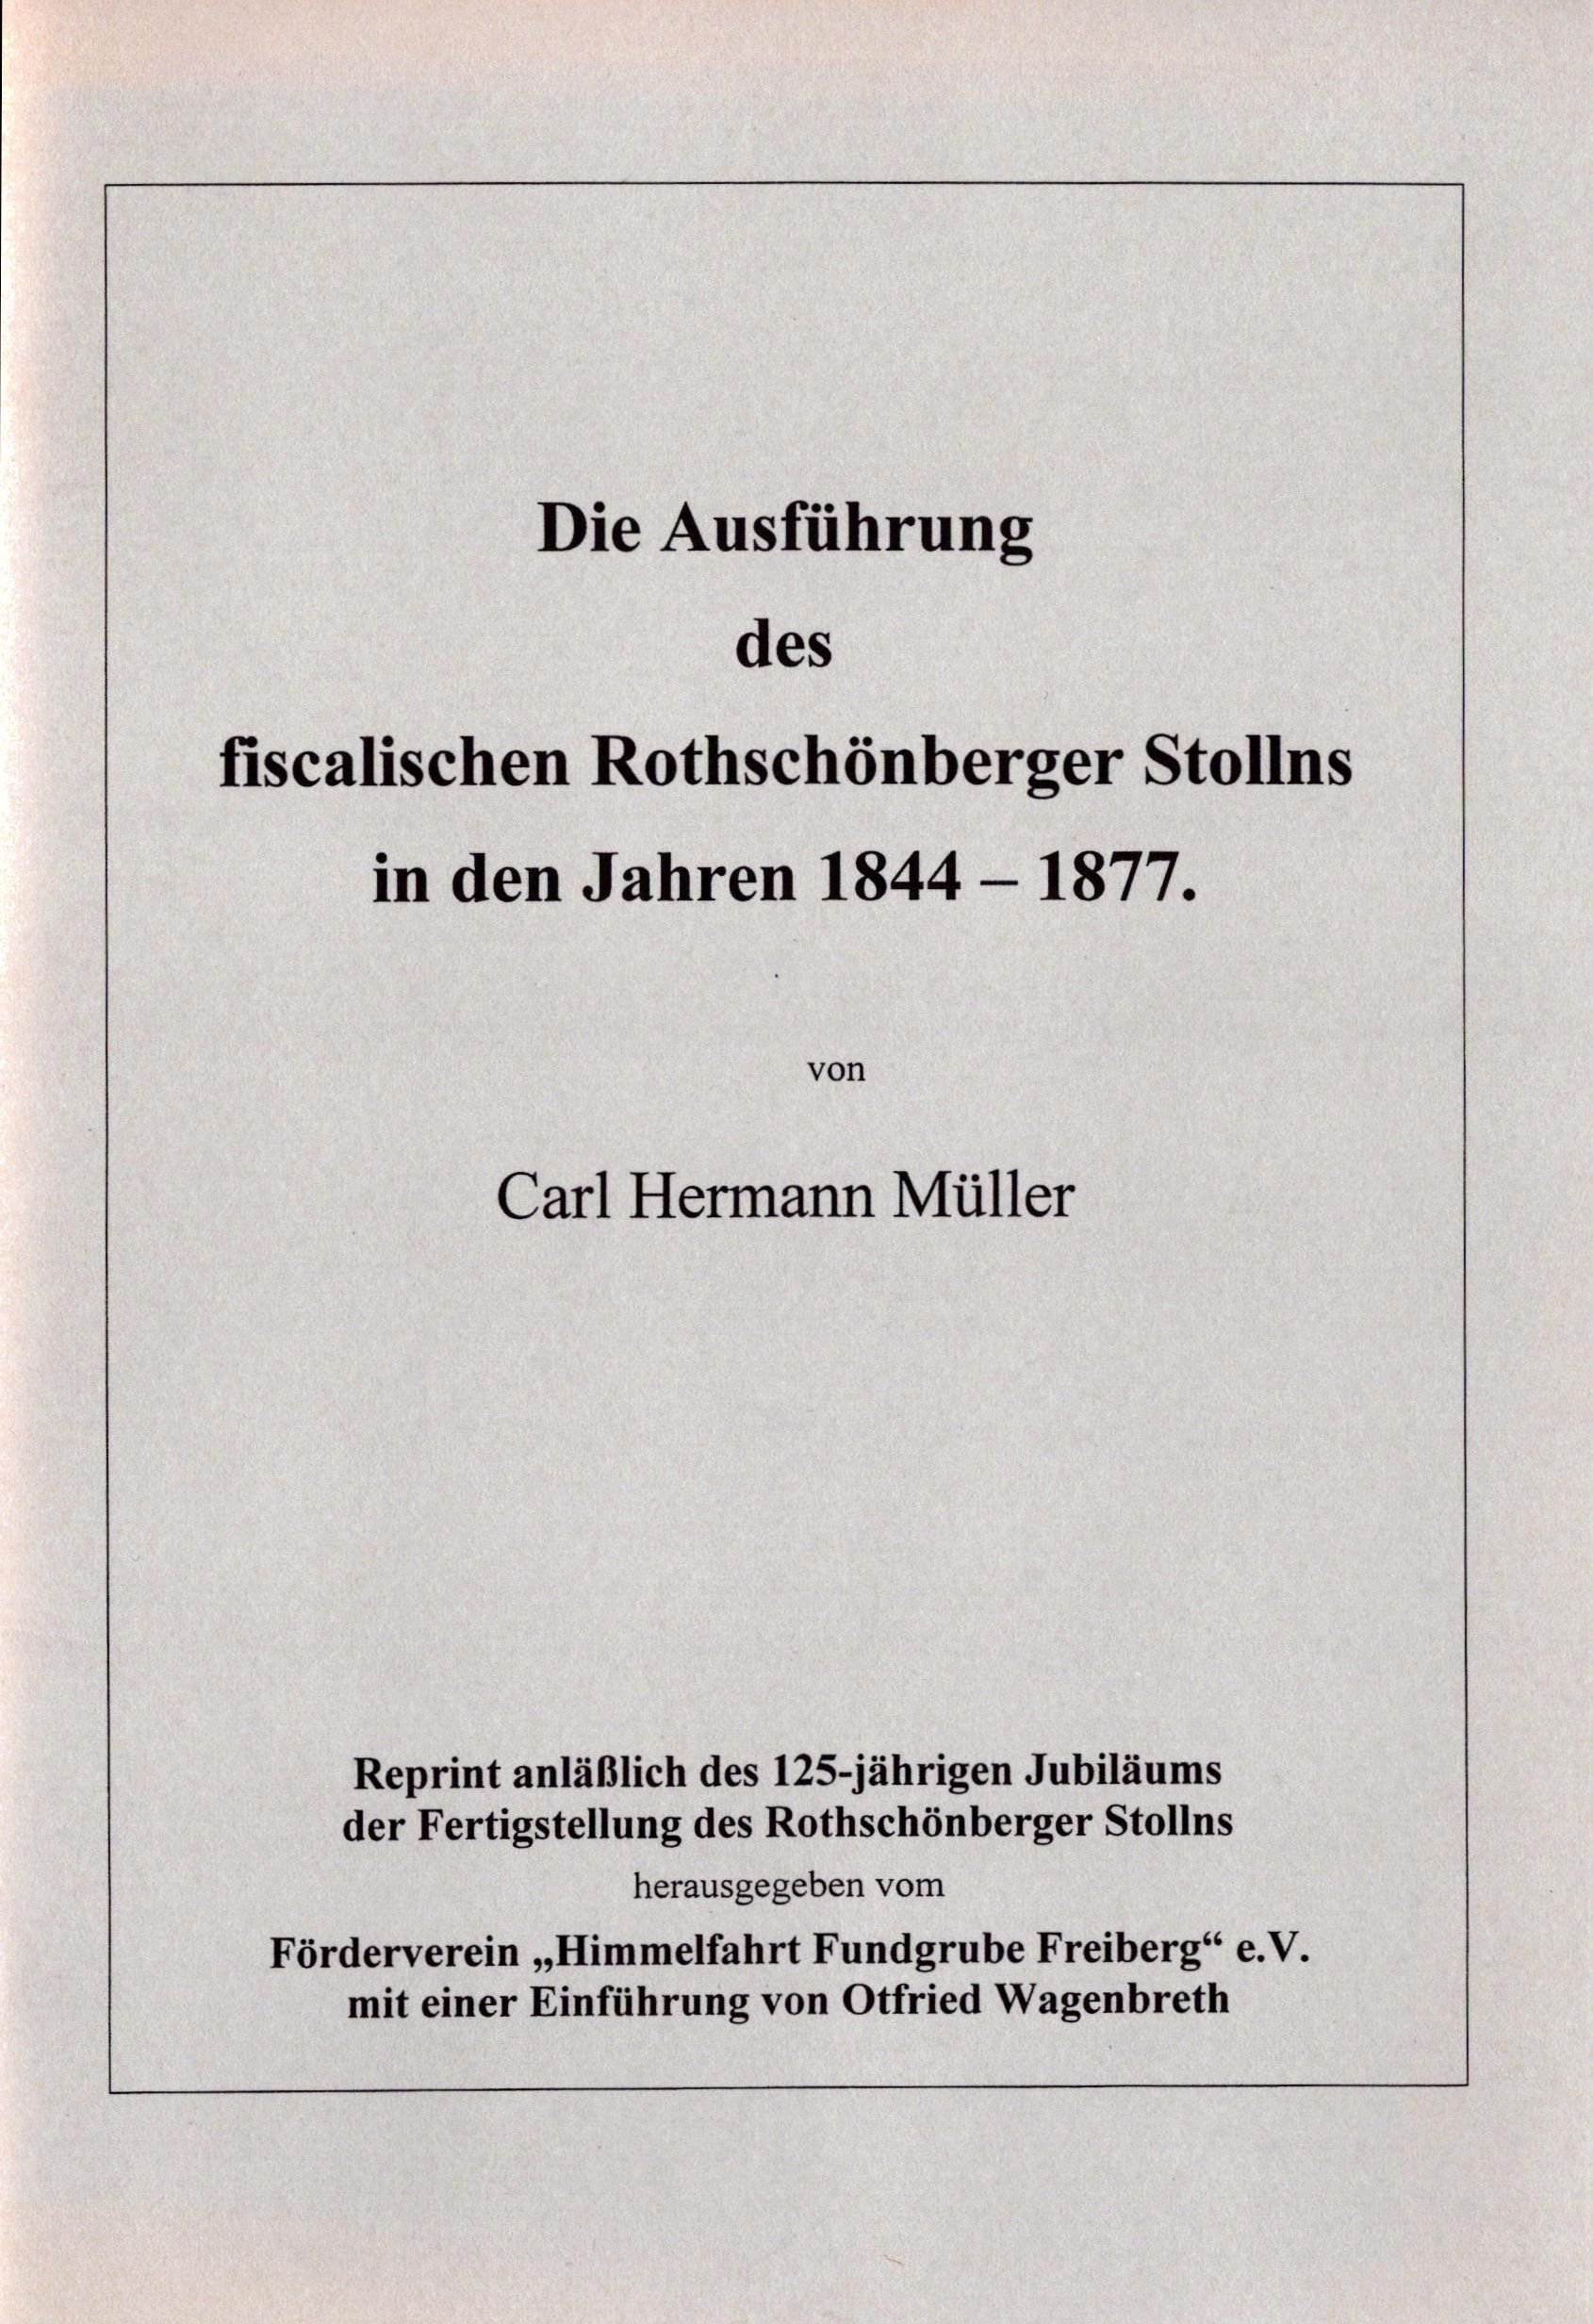 Die Ausführung des fiscalischen Rothschönberger Stollns in den Jahren 1844 - 1877 (Archiv SAXONIA-FREIBERG-STIFTUNG CC BY-NC-SA)